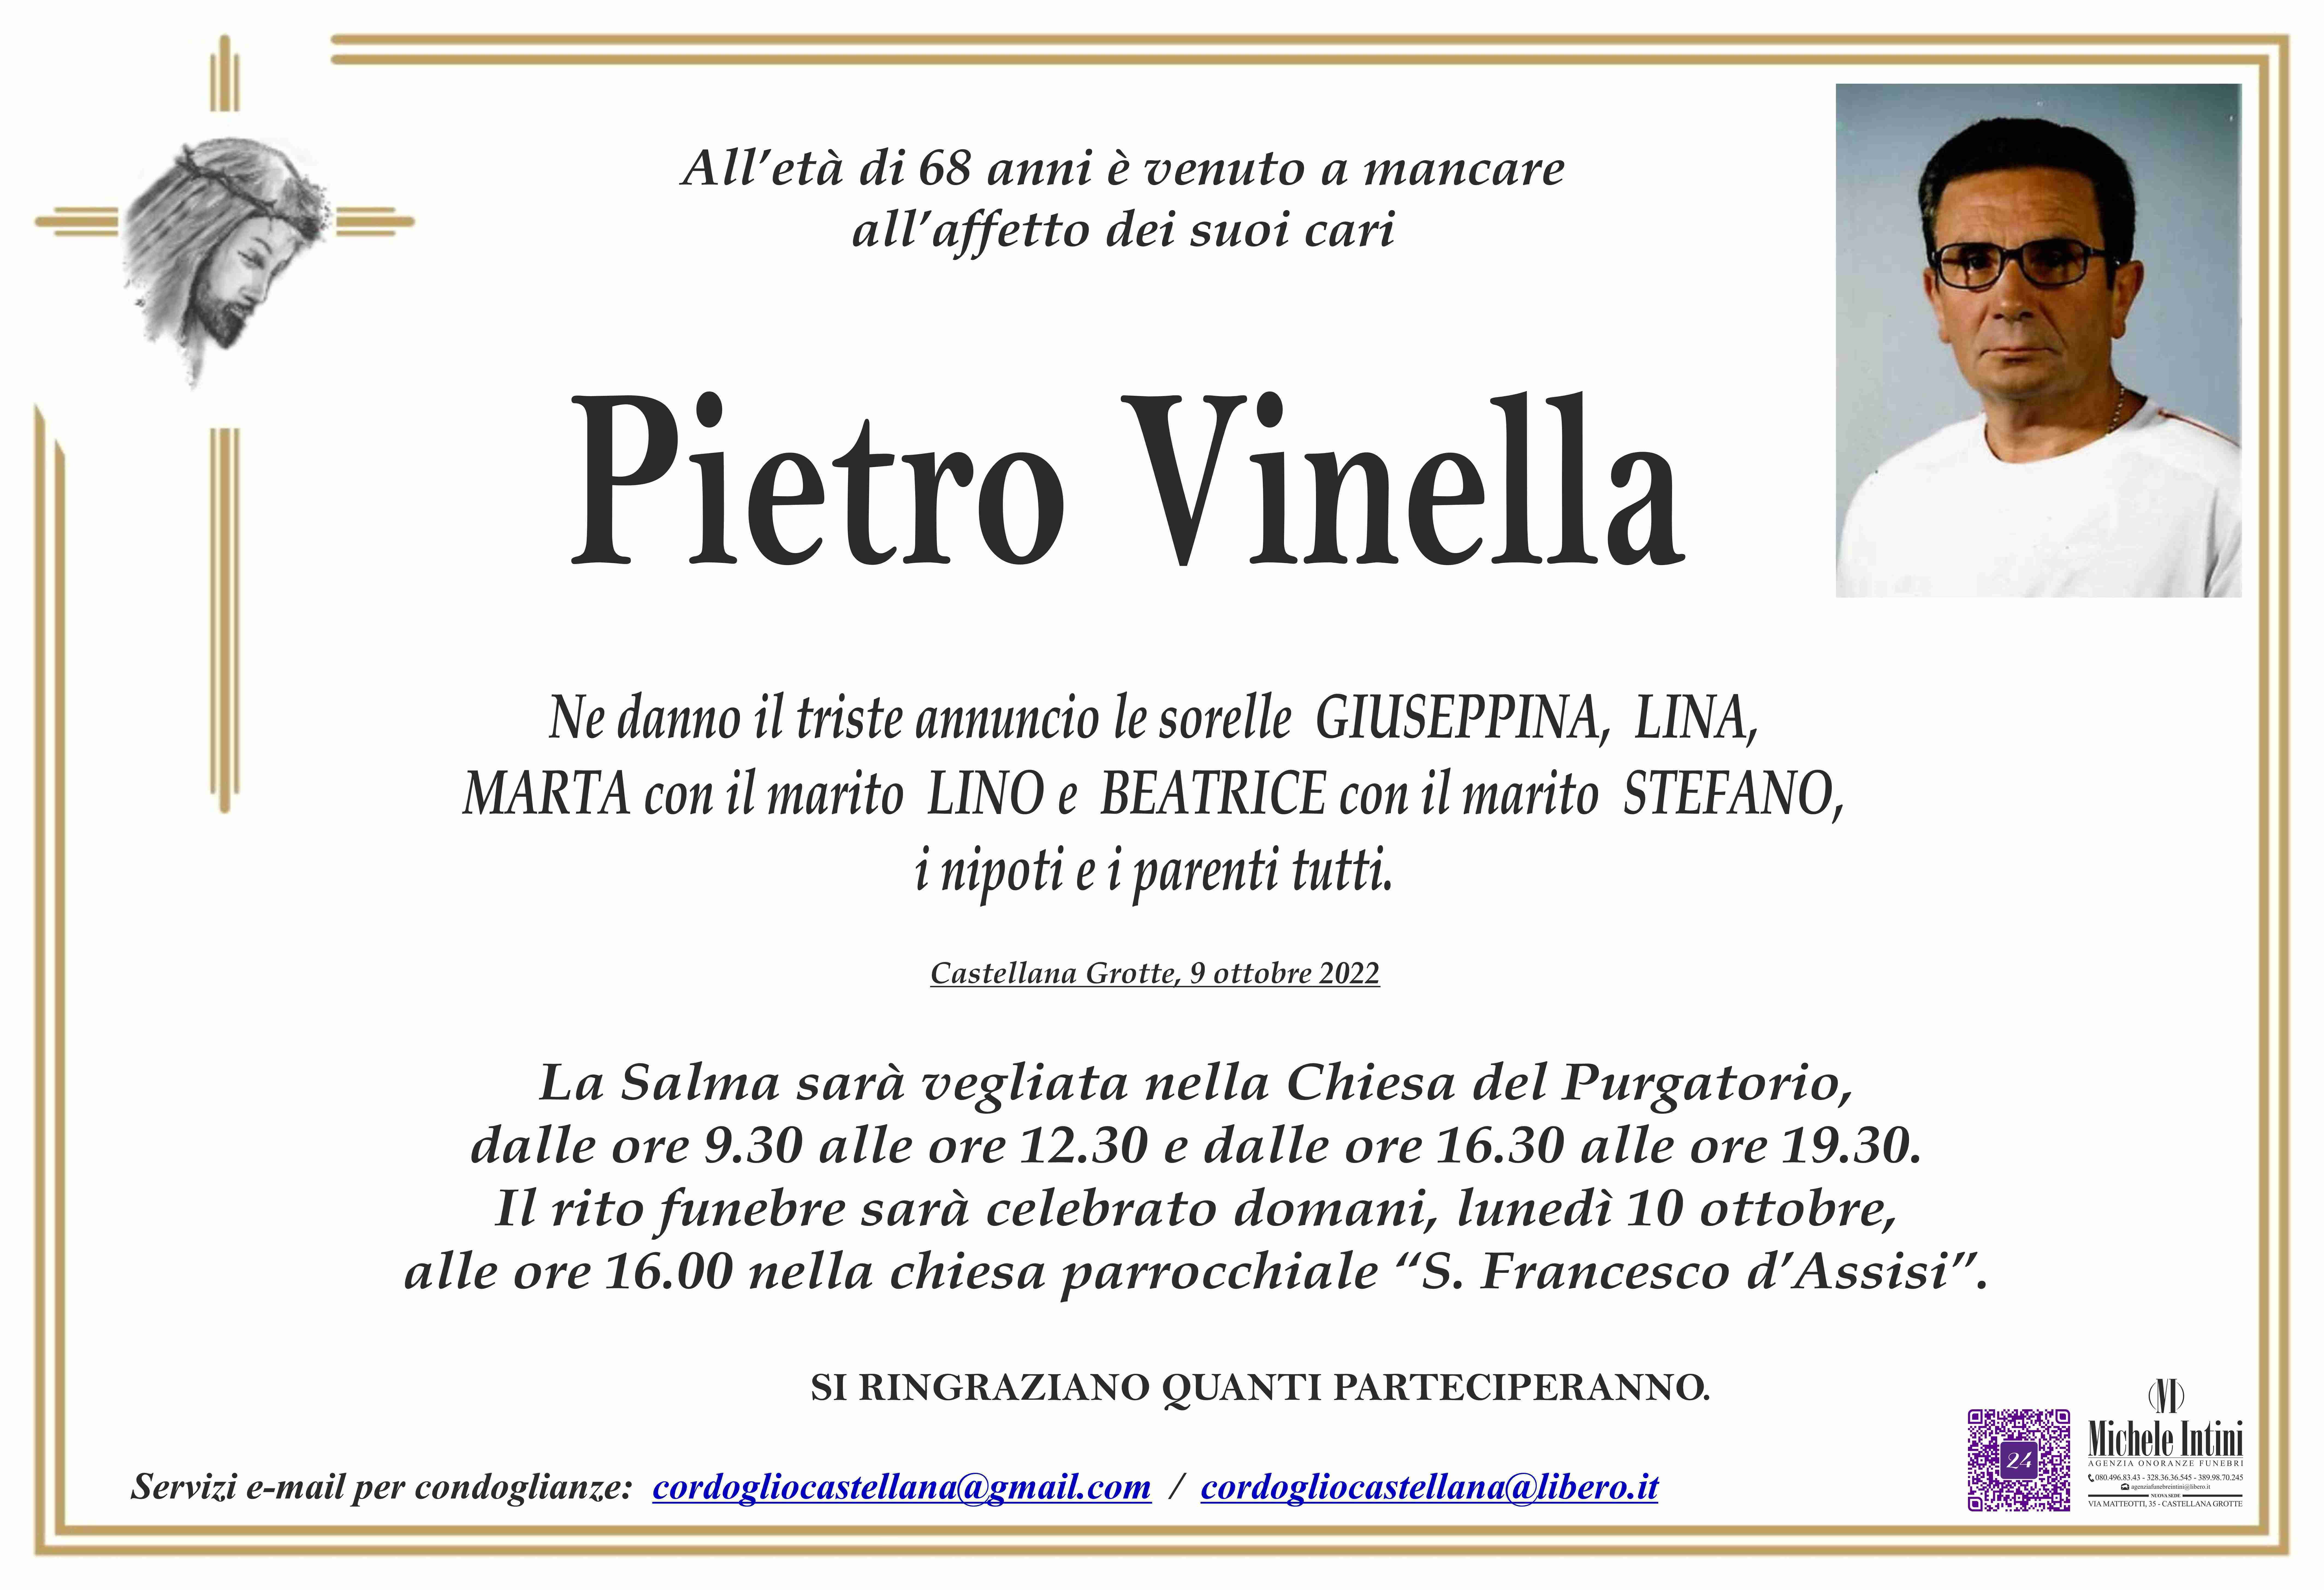 Pietro Vinella